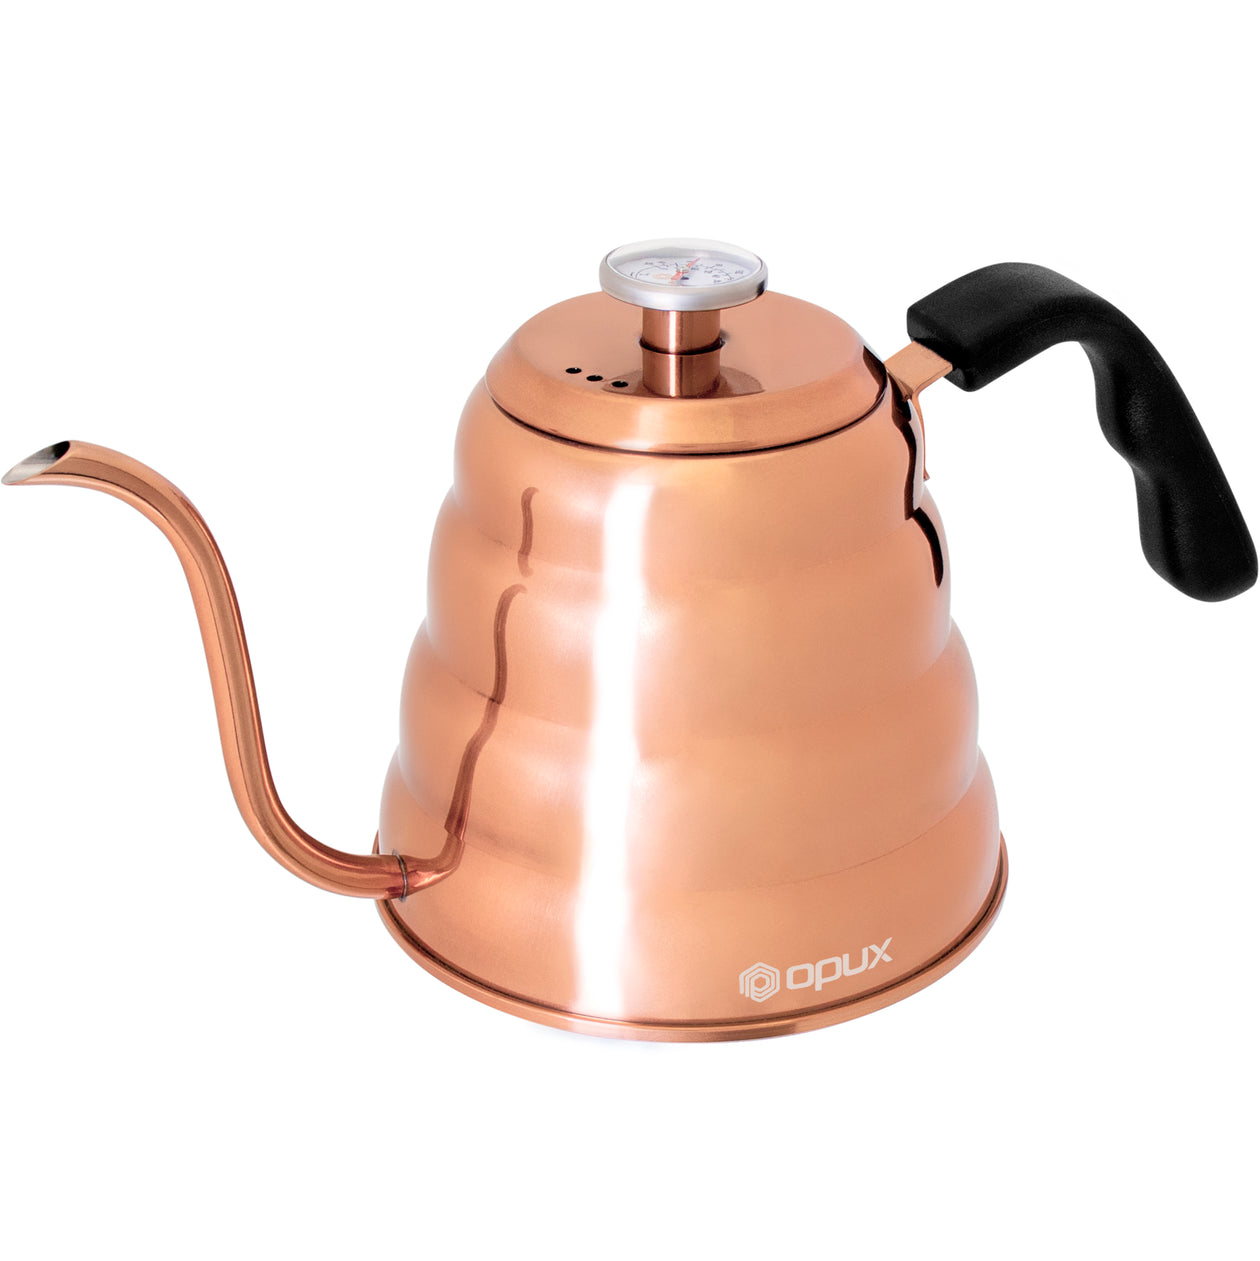 Bean Envy Gooseneck Pour Over Coffee Tea Kettle Pot Thermometer 40oz  Stainless